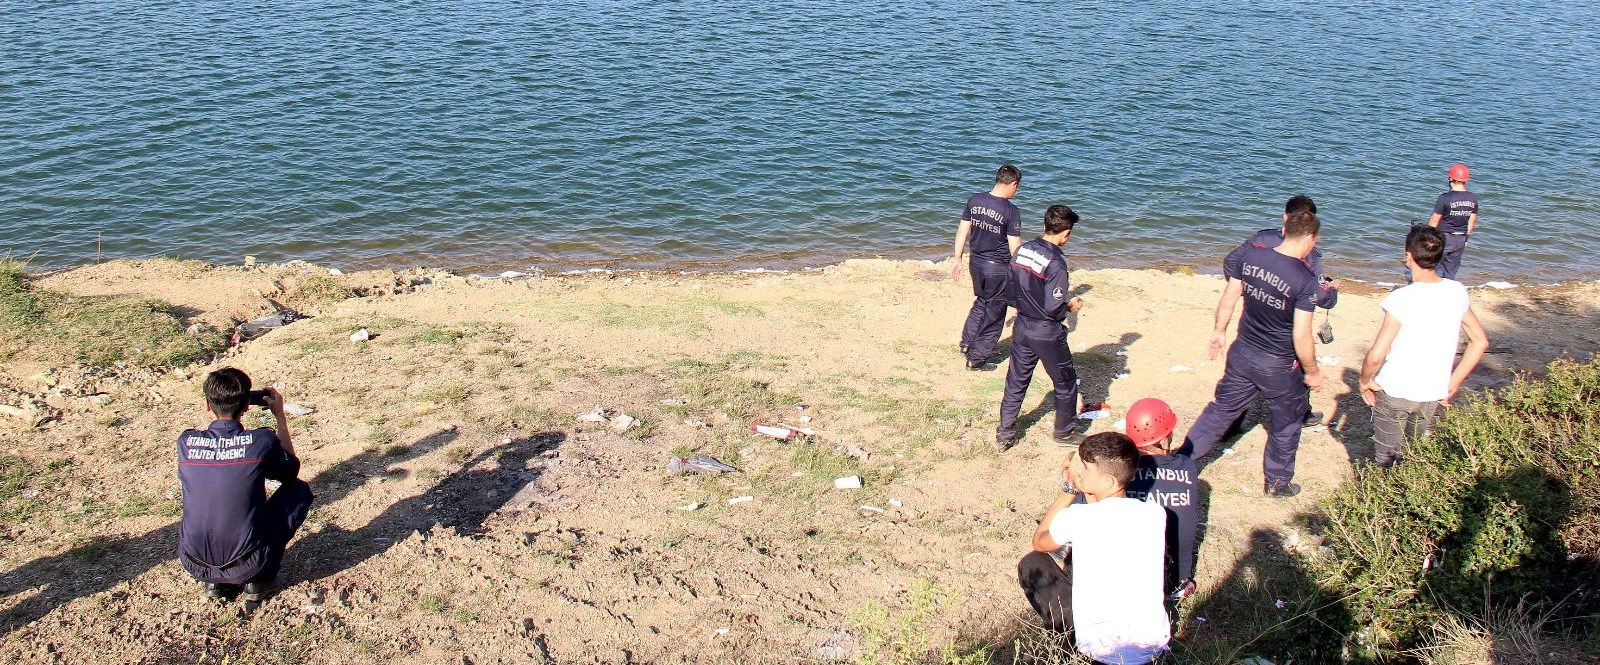 Alibeyköy Baraj Gölü'ndeki tekne keyfi ölümle bitti